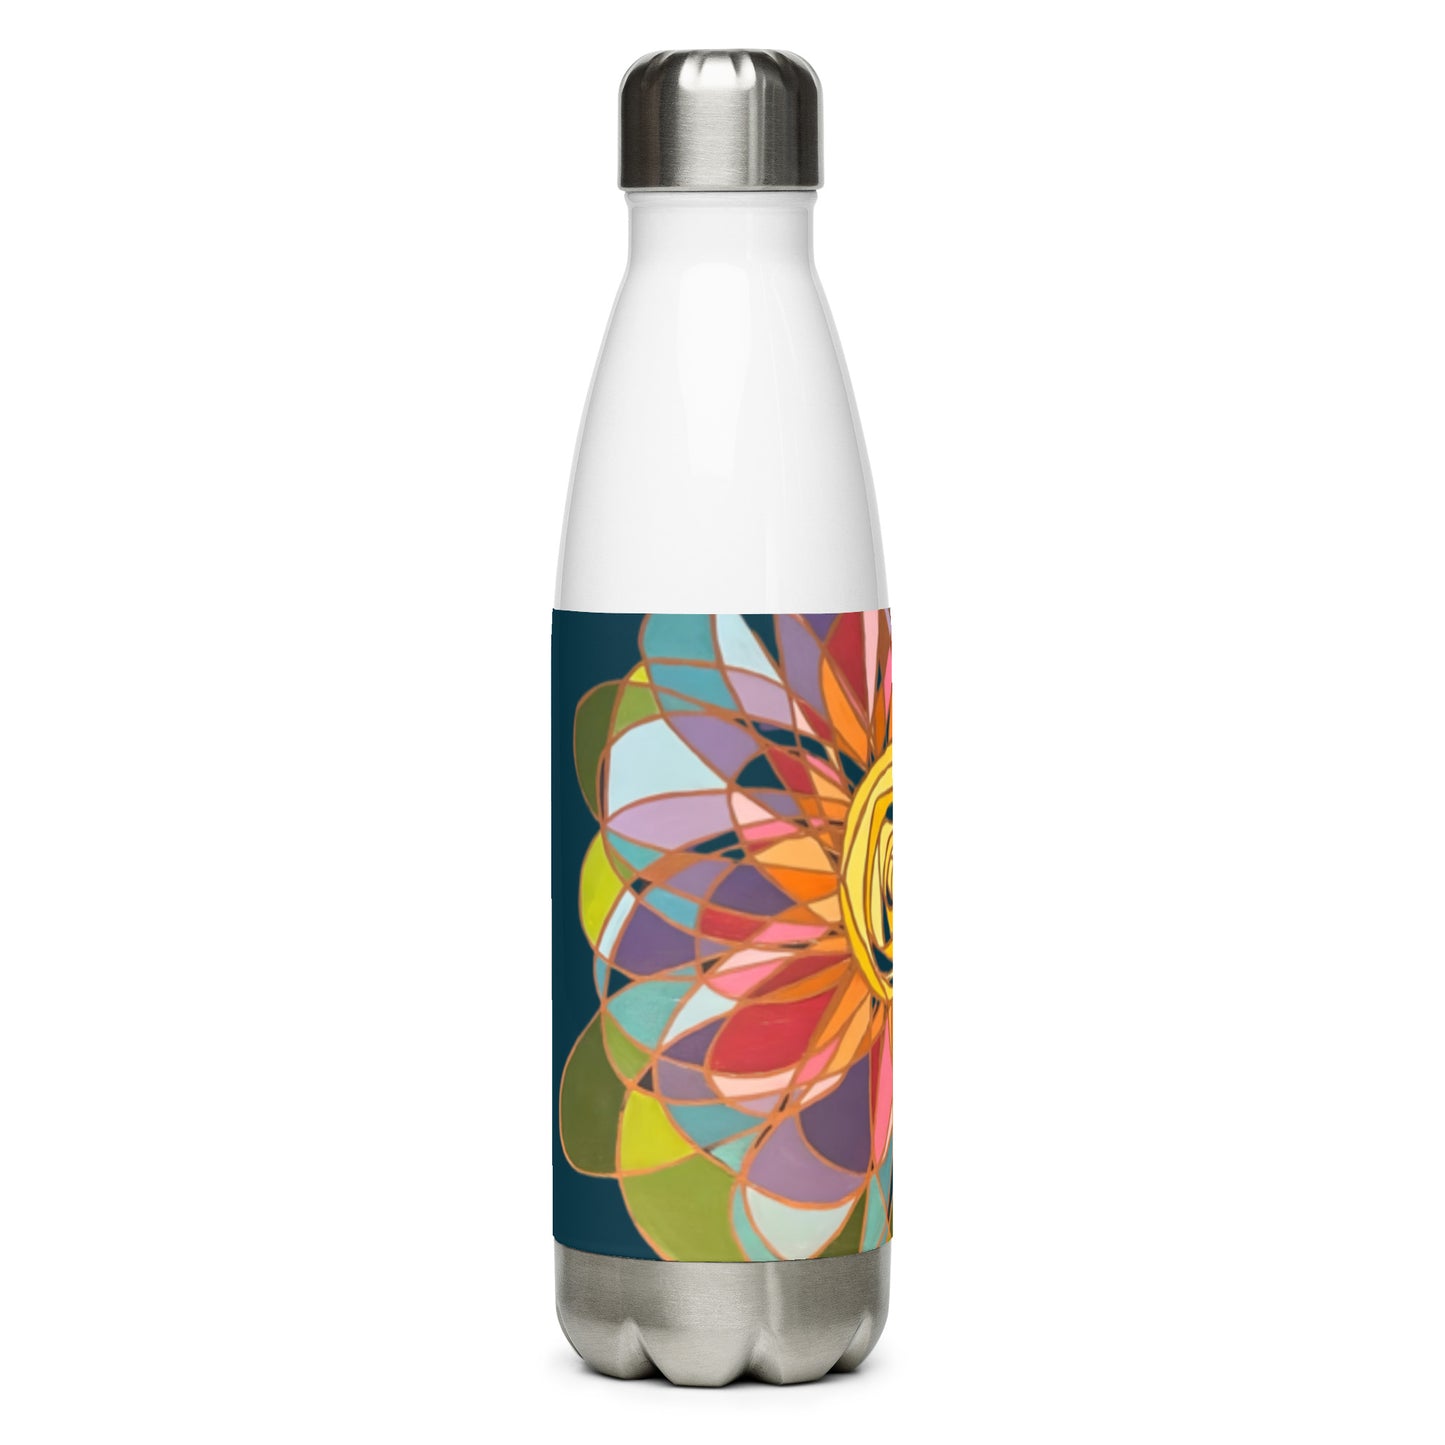 Swirl Flower in Rainbow Stainless steel water bottle